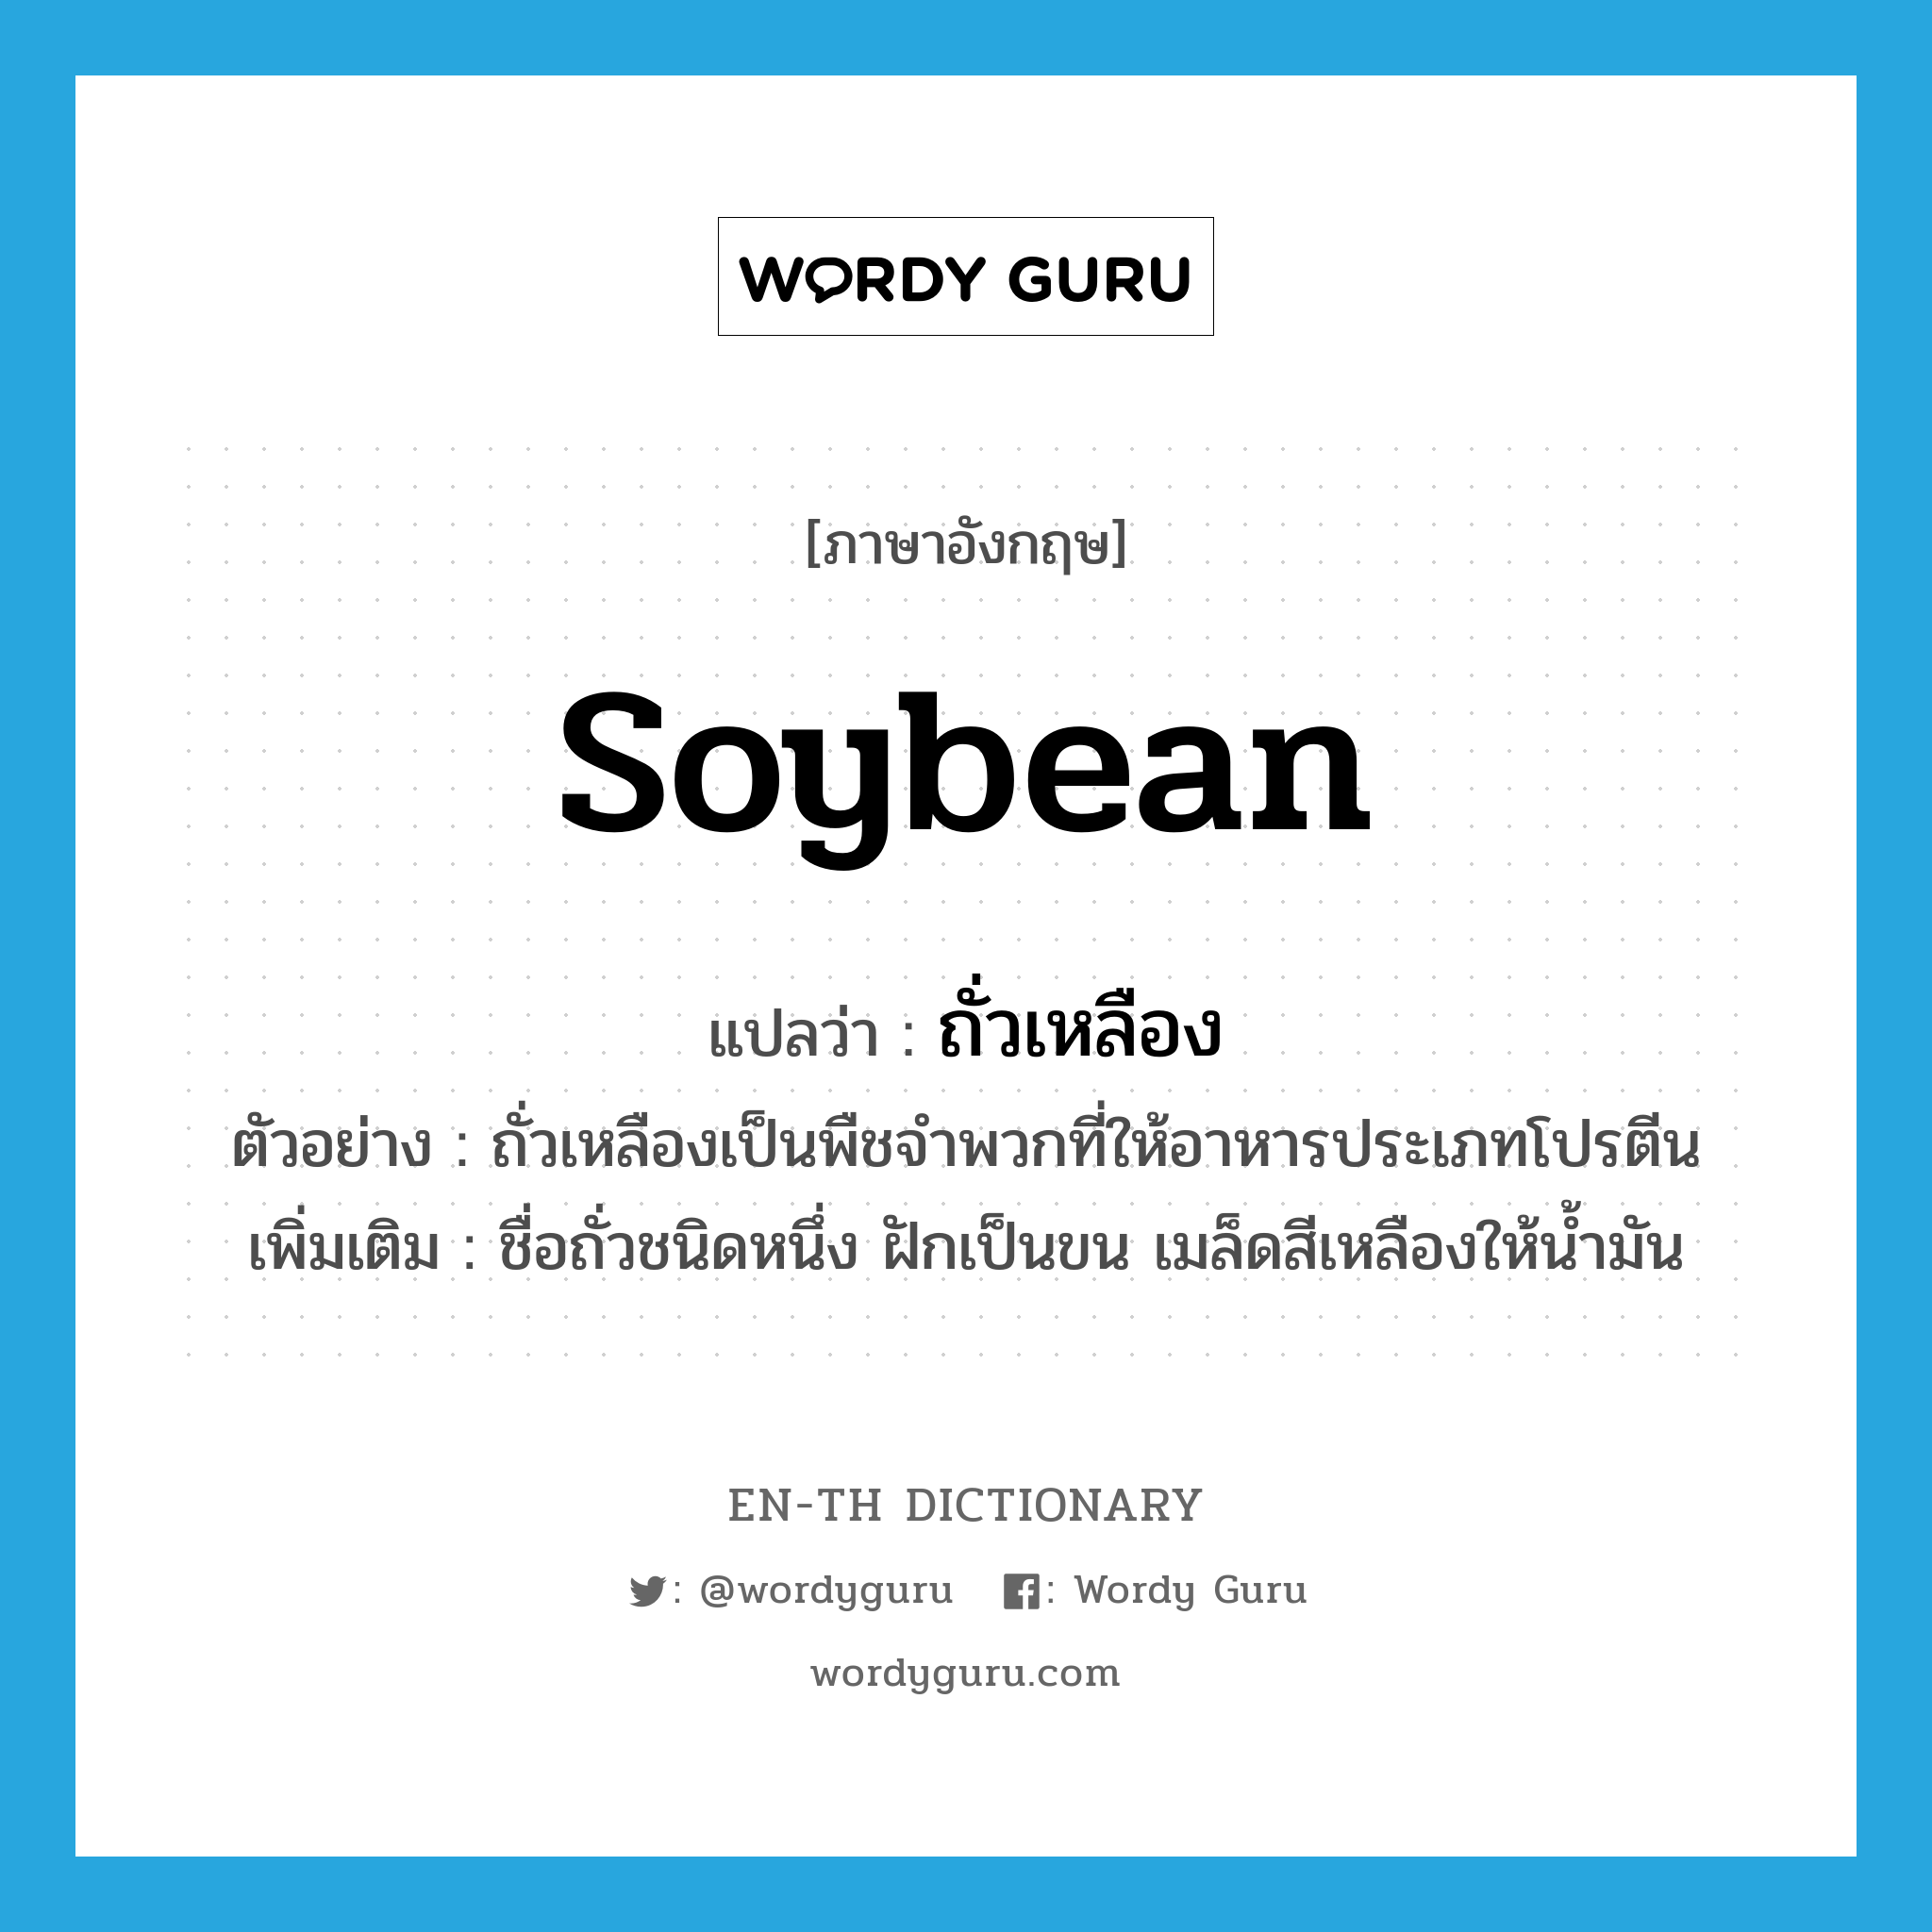 soybean แปลว่า?, คำศัพท์ภาษาอังกฤษ soybean แปลว่า ถั่วเหลือง ประเภท N ตัวอย่าง ถั่วเหลืองเป็นพืชจำพวกที่ให้อาหารประเภทโปรตีน เพิ่มเติม ชื่อถั่วชนิดหนึ่ง ฝักเป็นขน เมล็ดสีเหลืองให้น้ำมัน หมวด N